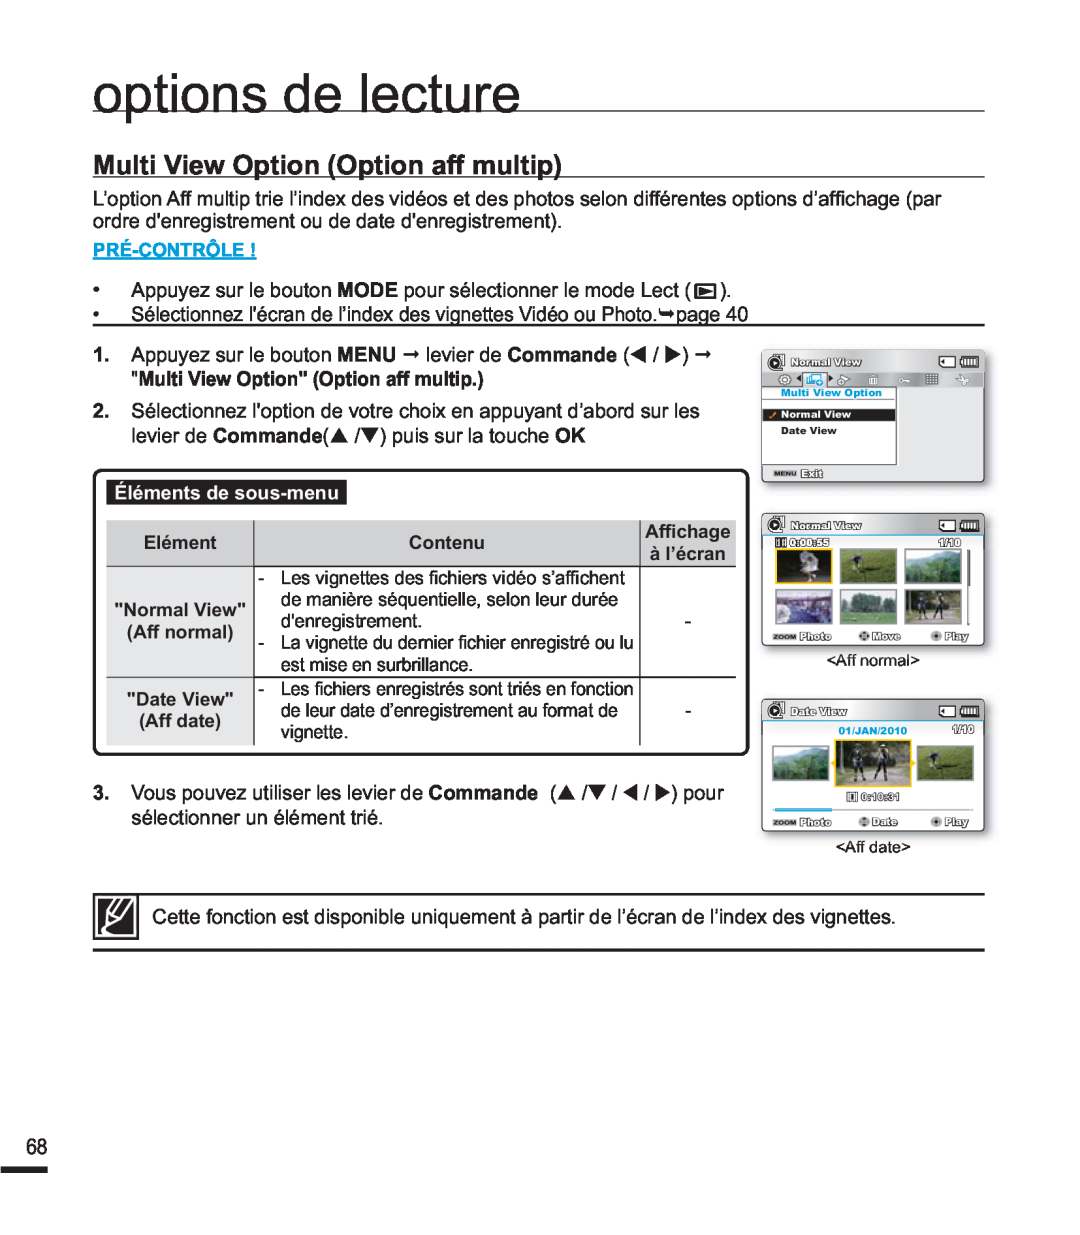 Samsung SMX-F44BP/EDC manual Multi View Option Option aff multip, options de lecture, Éléments de sous-menu, Pré-Contrôle 